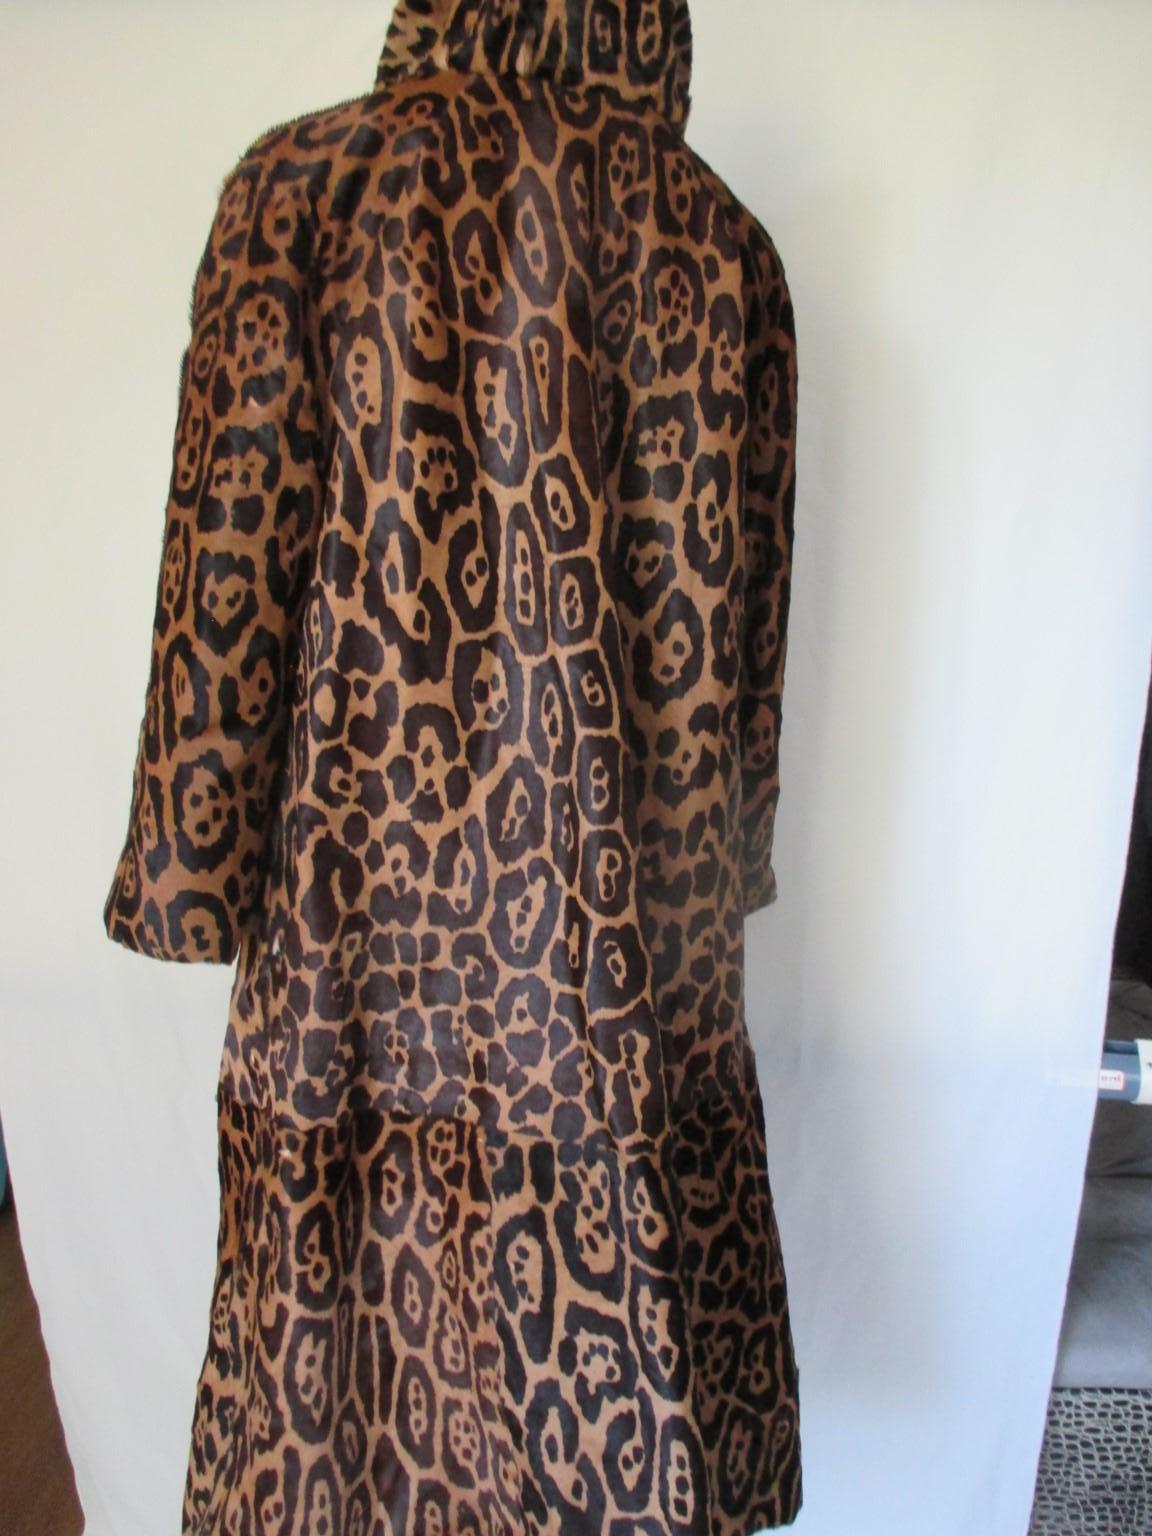 Ce manteau vintage rare est confectionné en fourrure de poils de poney imprimée teintée en léopard.

Nous proposons d'autres articles de fourrure exclusifs, voir notre boutique.

Détails :
Réversible 
Doublure noire
Pas de crochets/boutons de